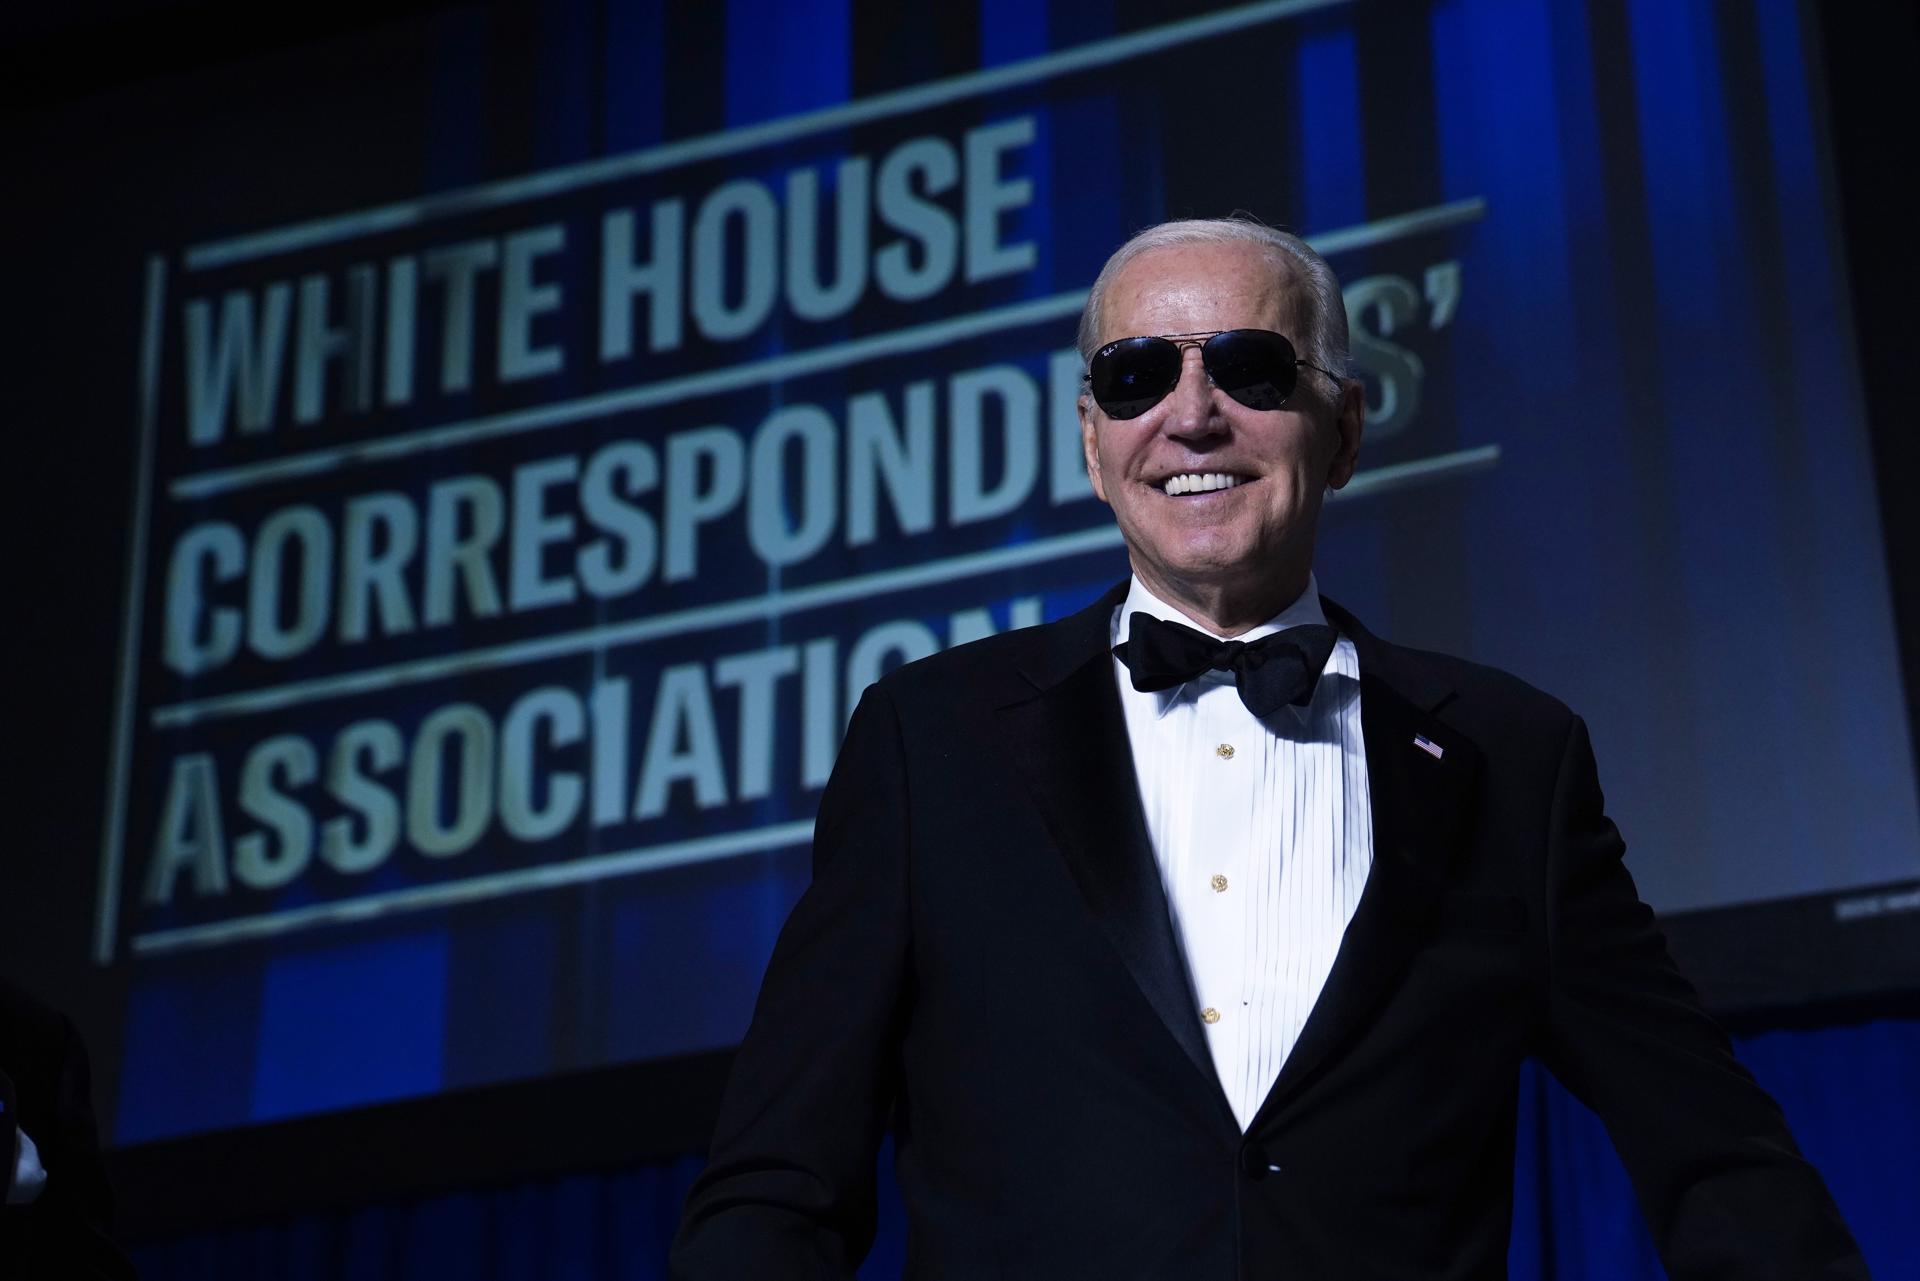 Joe Biden, desfermat: reparteix contra tot i tothom al Sopar de Corresponsals de la Casa Blanca